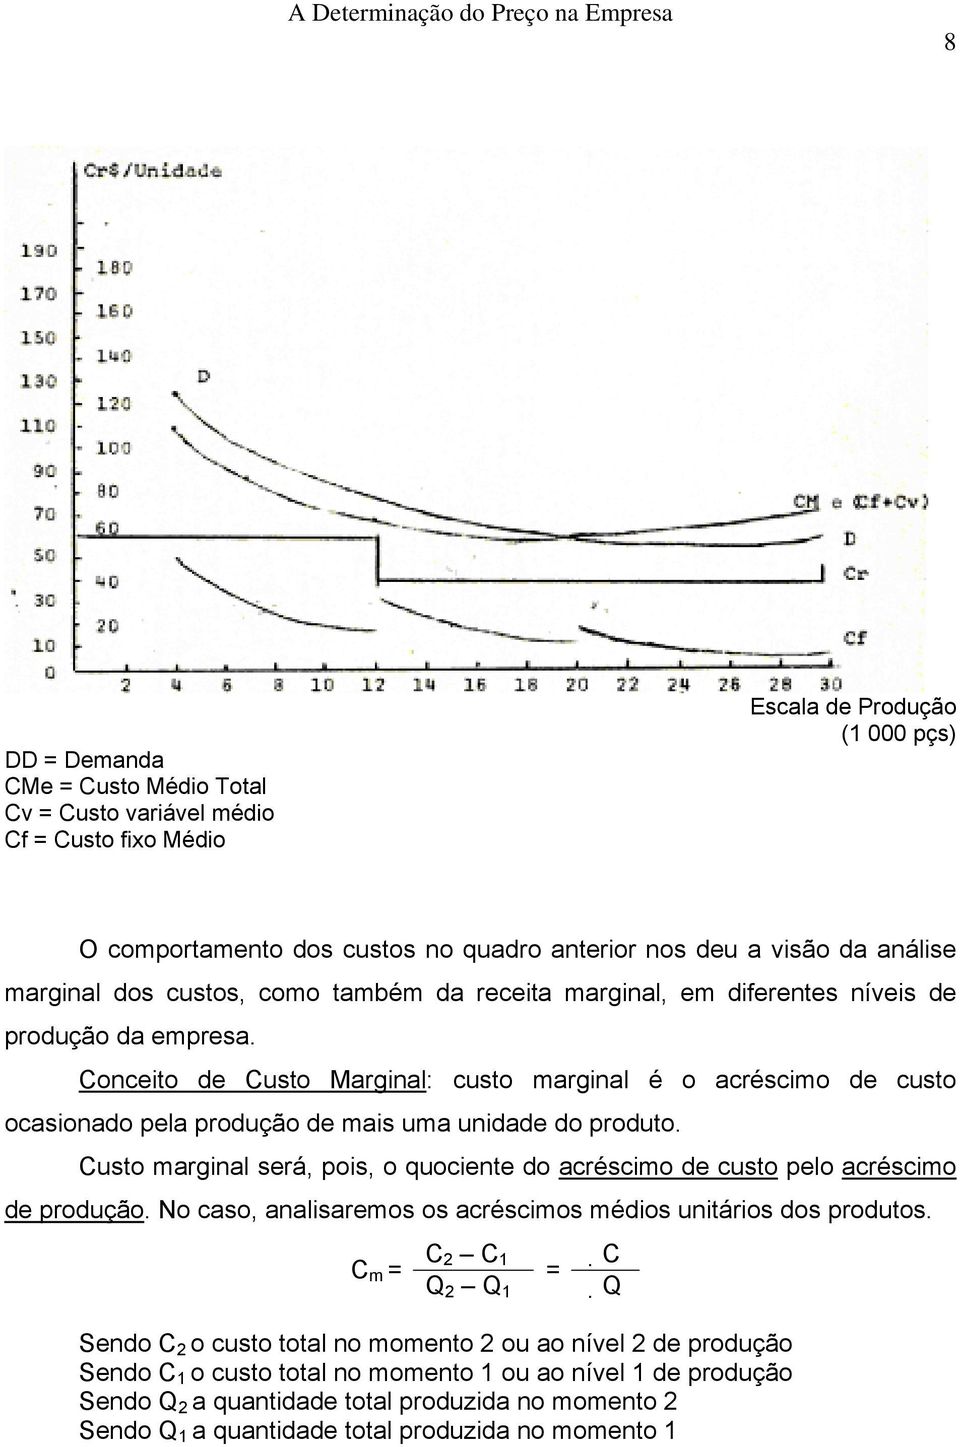 Conceito de Cu sto Marginal: custo marginal é o acréscimo de custo ocasionado pela produção de mais uma unidade do produto.